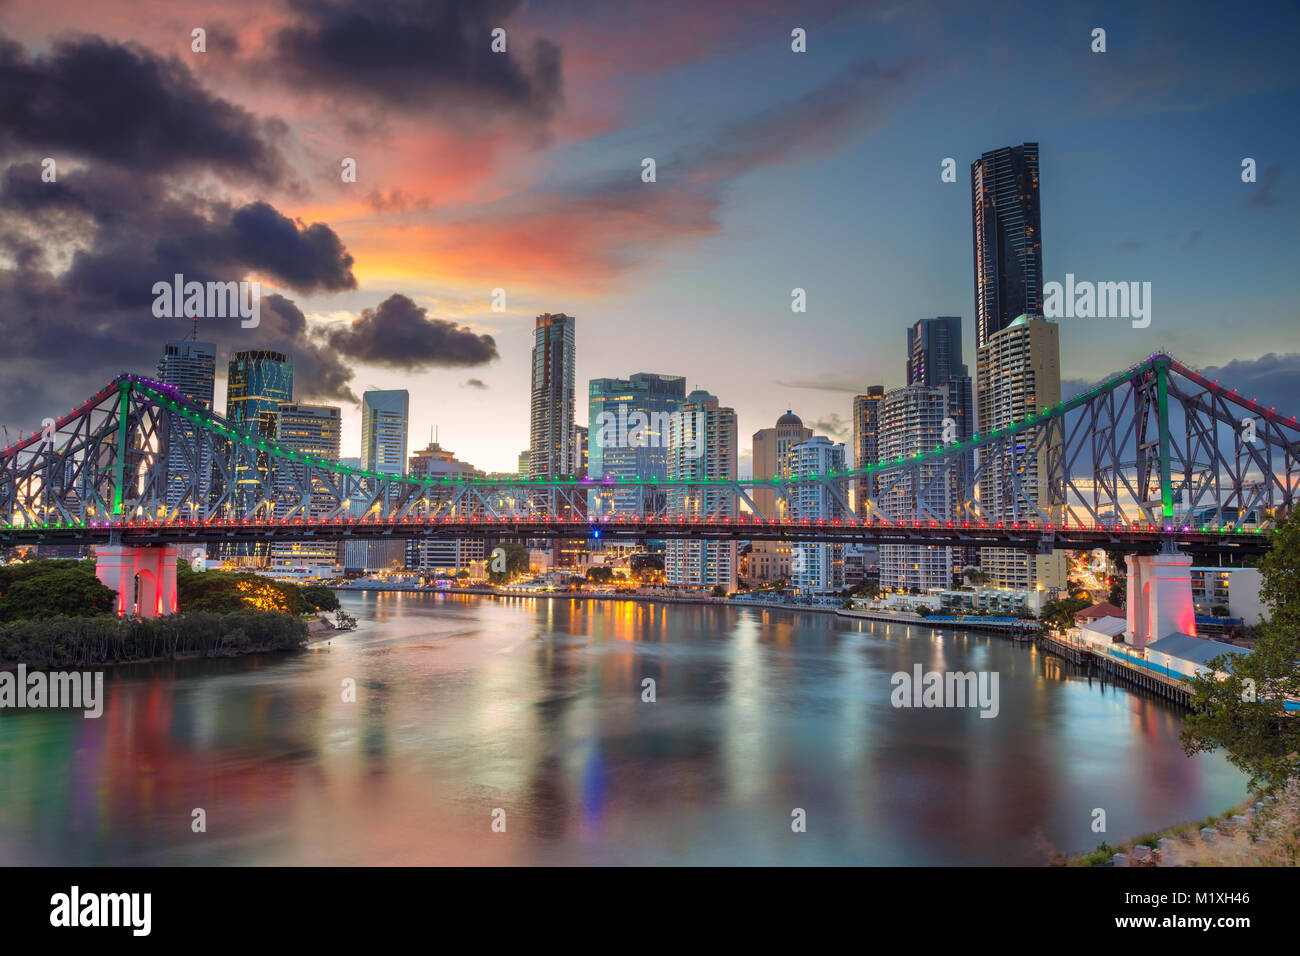 Brisbane. Cityscape image of Brisbane skyline, Australia with Story Bridge during dramatic sunset. Stock Photo